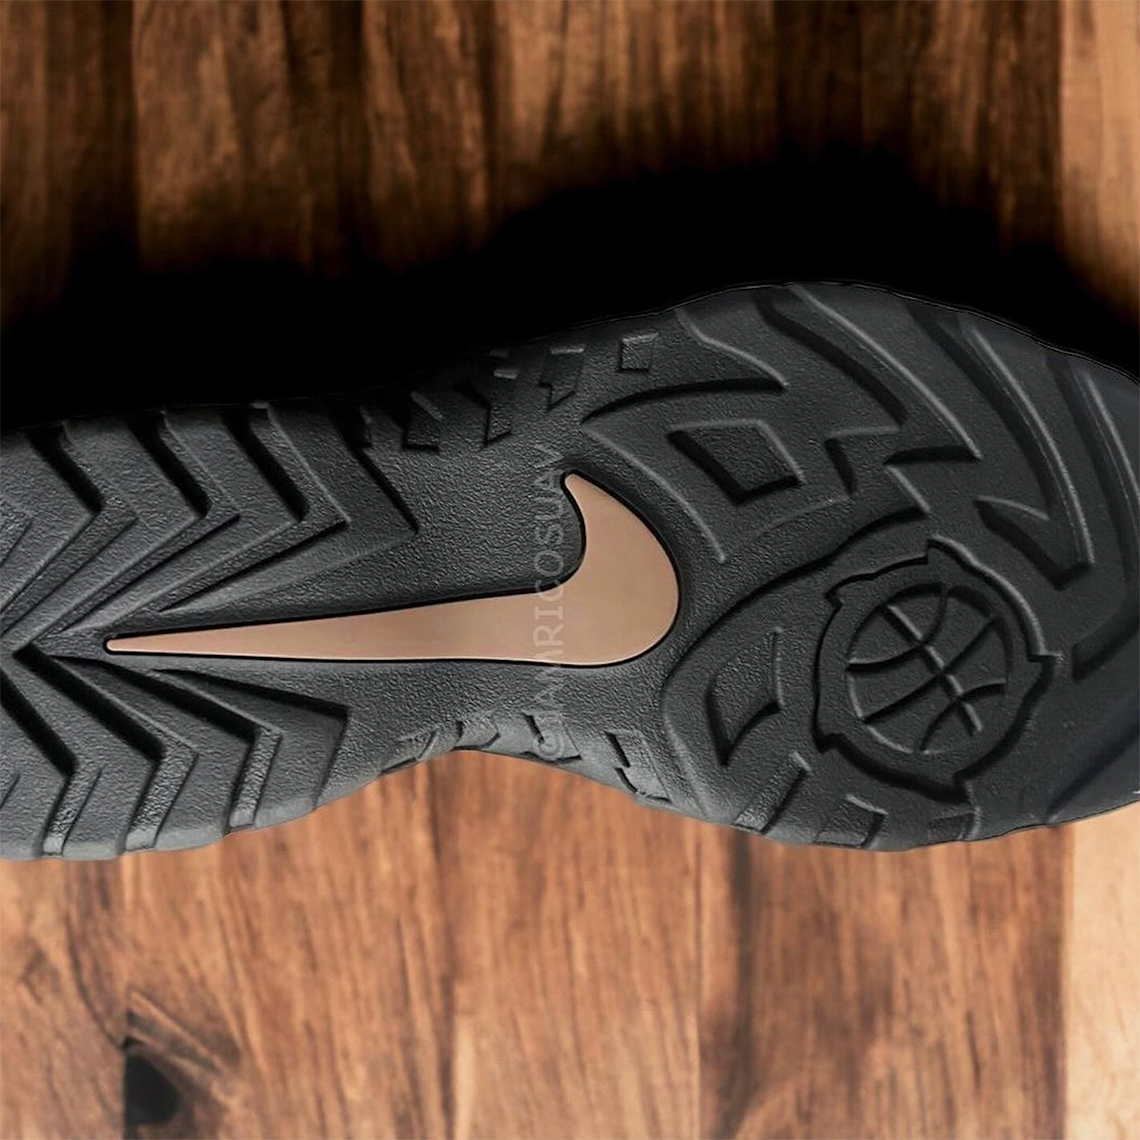 Supreme Nike Darwin Low Camo Fq3000 200 1